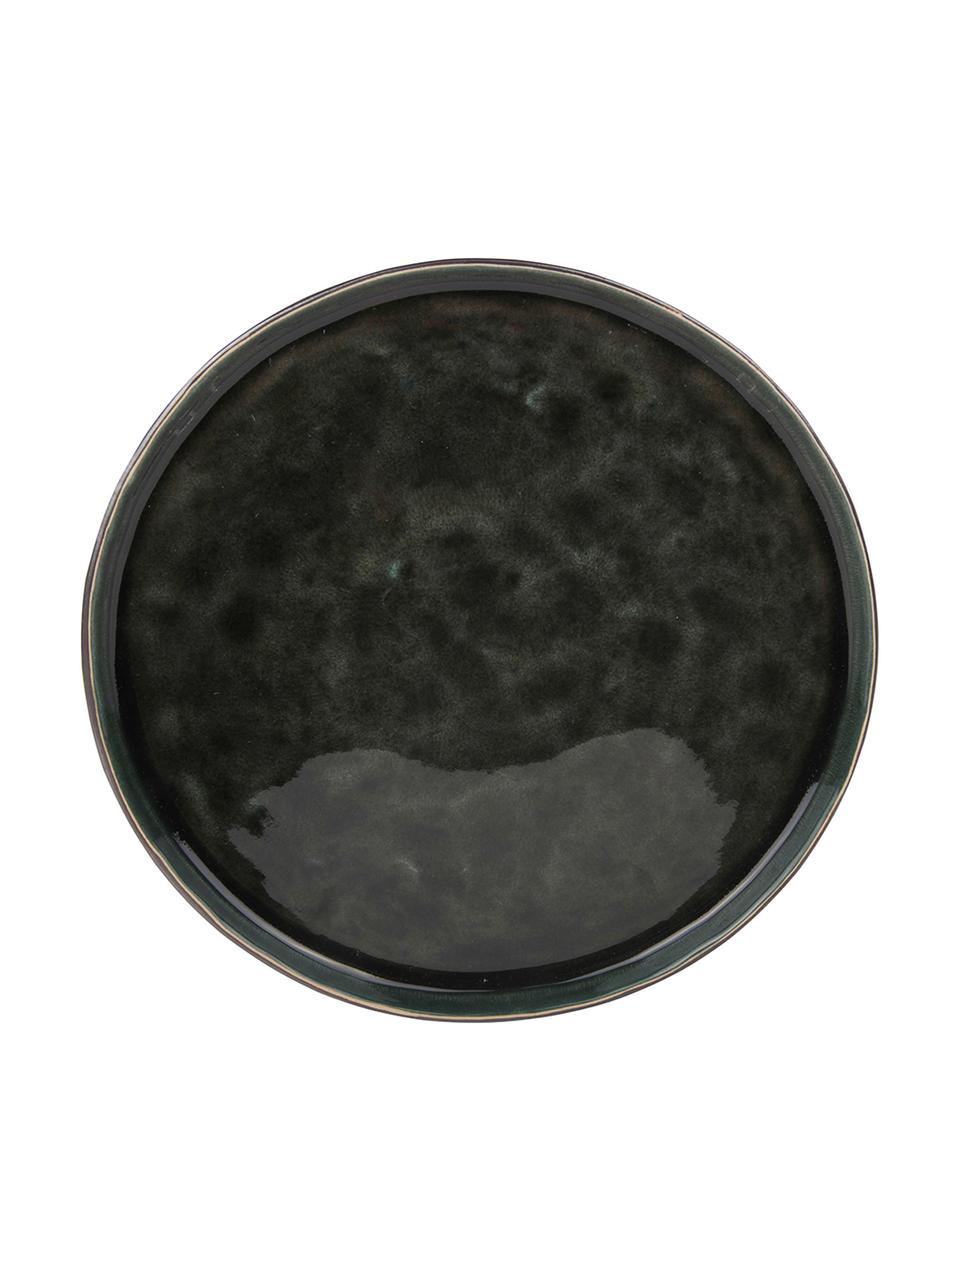 Ontbijtbord Lagune, 6 stuks, Keramiek, Grijsbruin, zwartgroen, Ø 22 cm